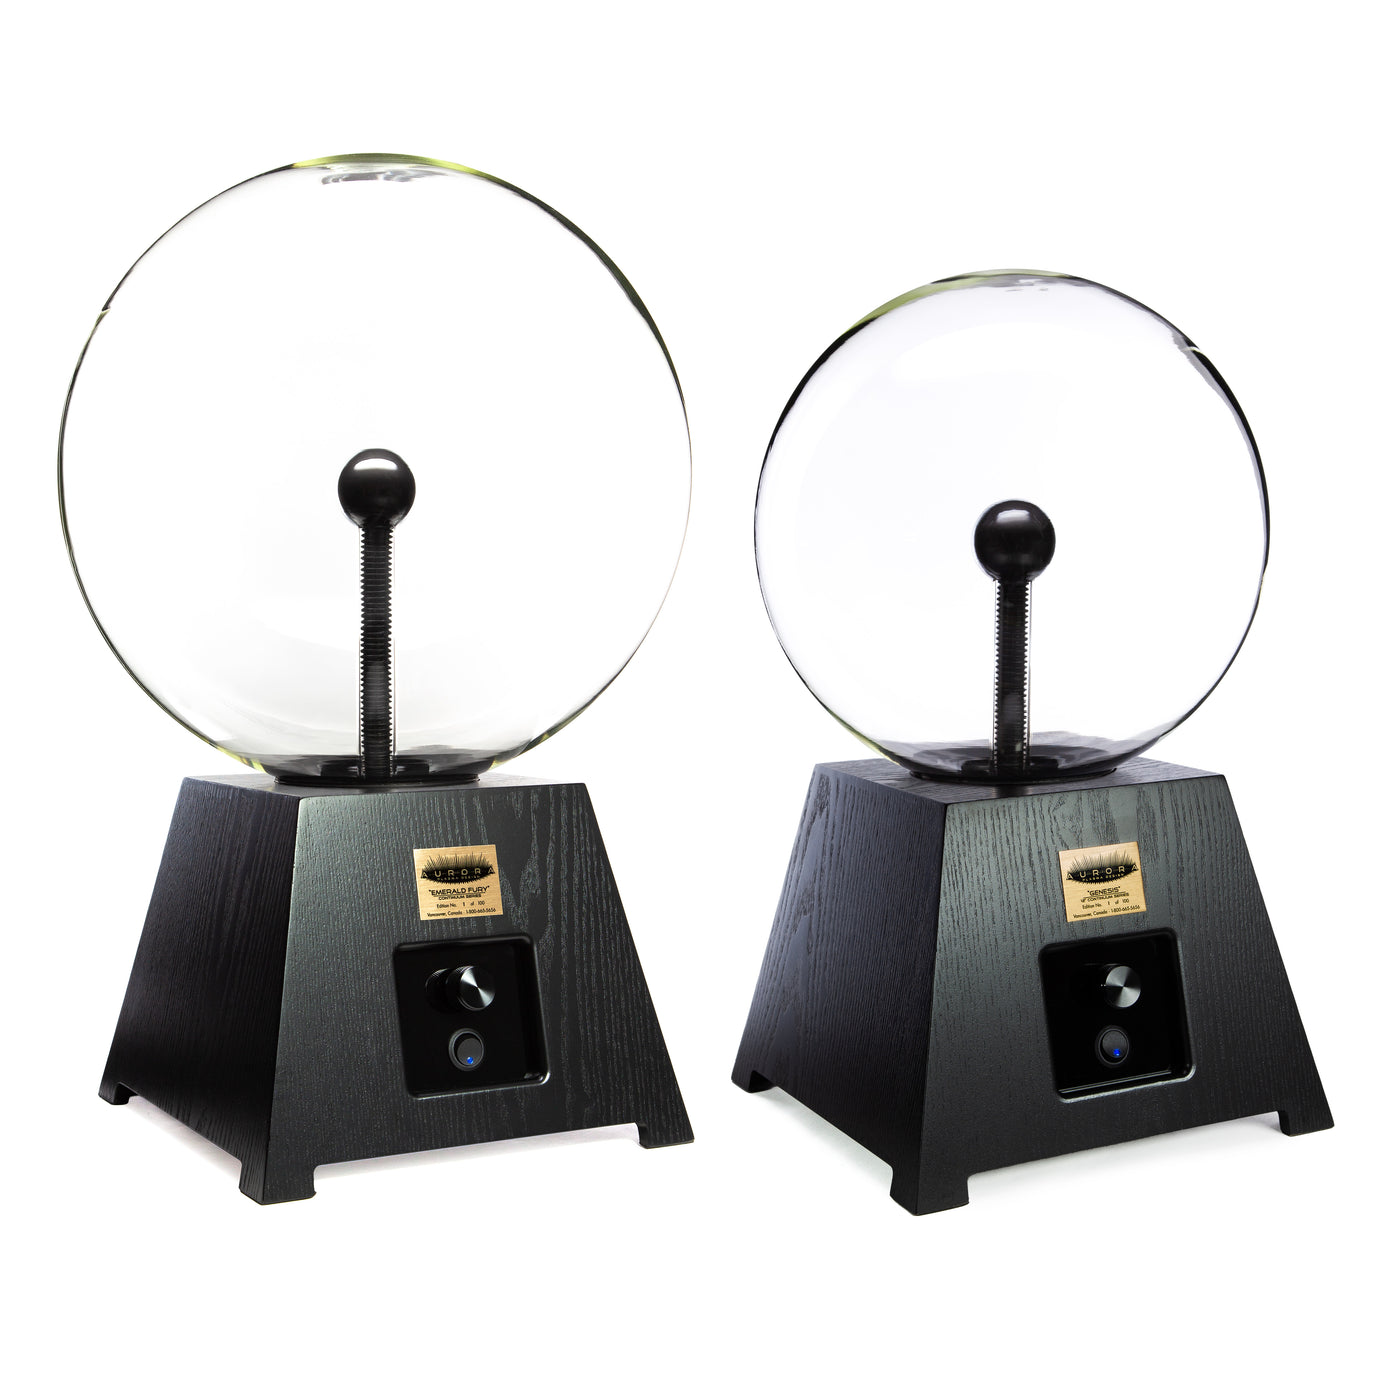 “Genesis” Continuum Series Plasma Globe